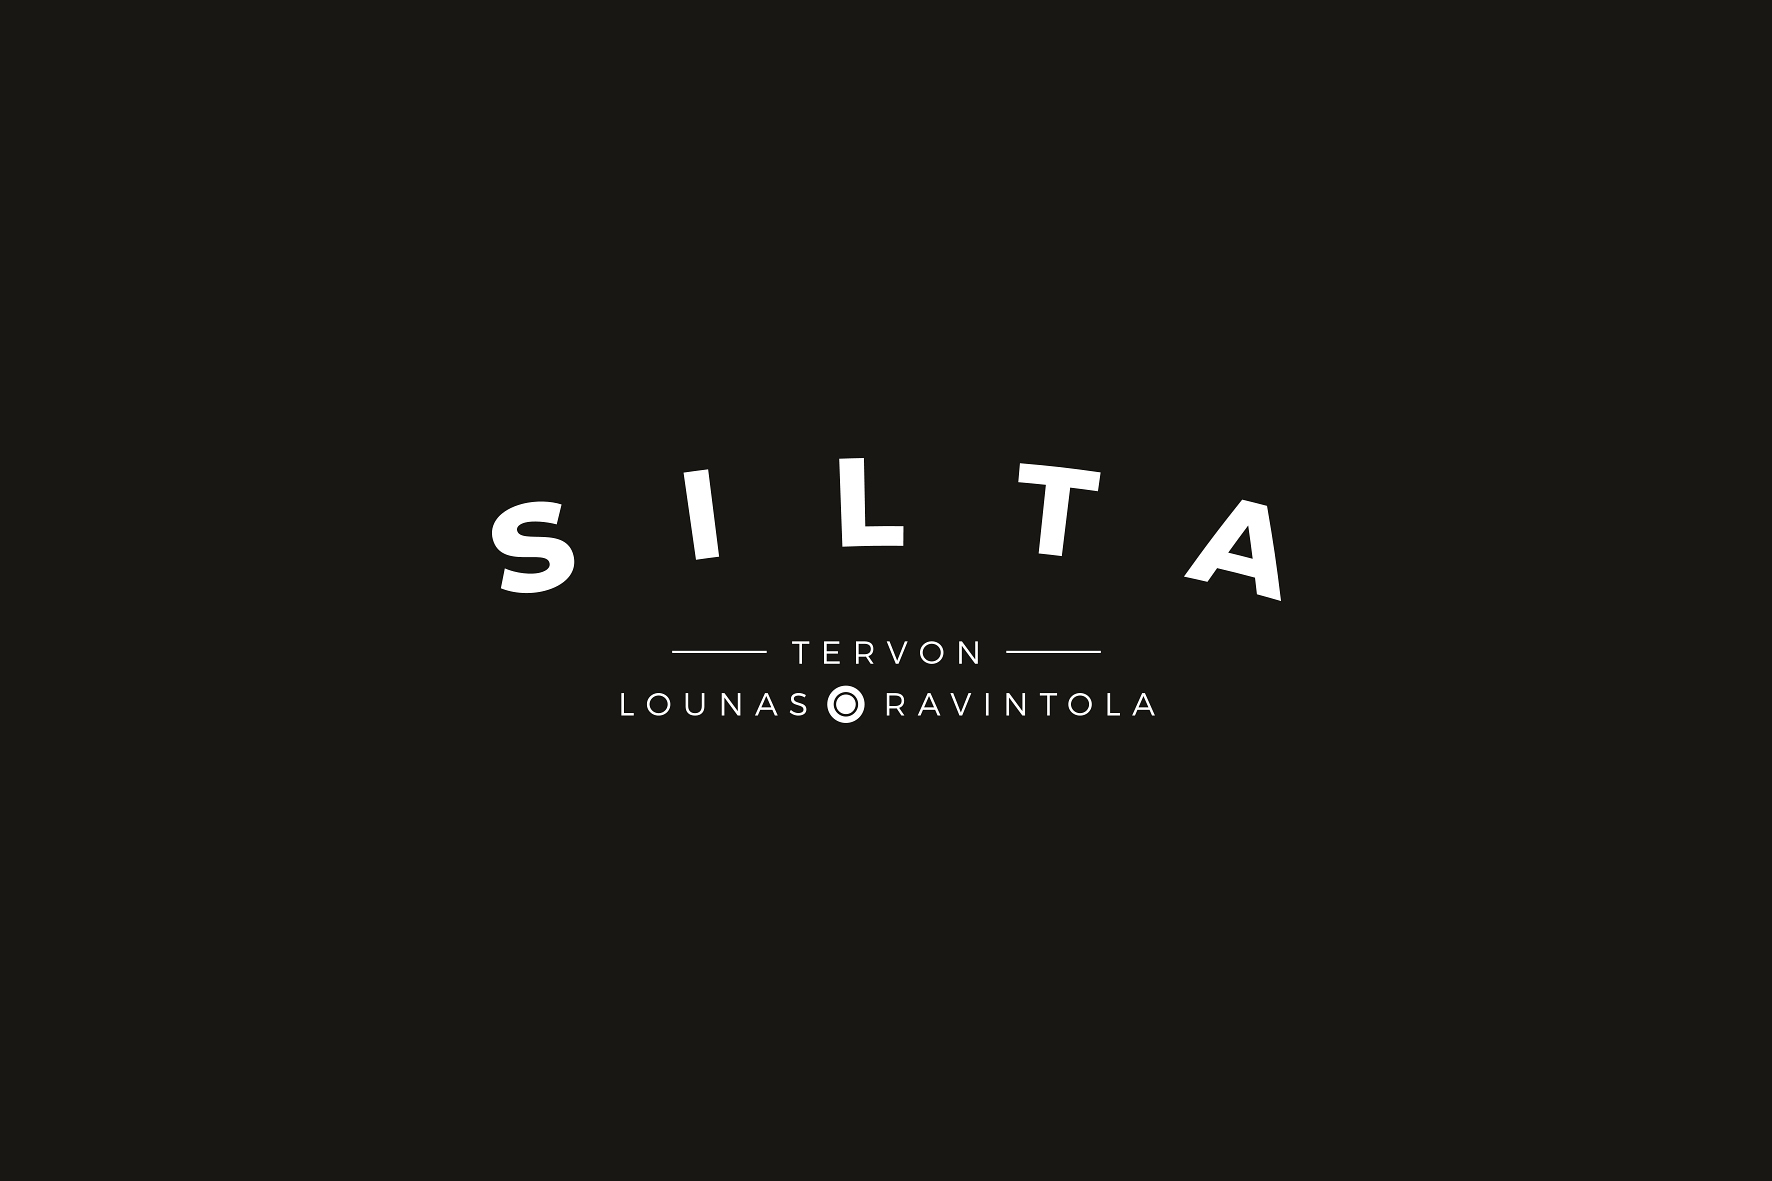 Lounas_Ravintola_silta_logo_nega